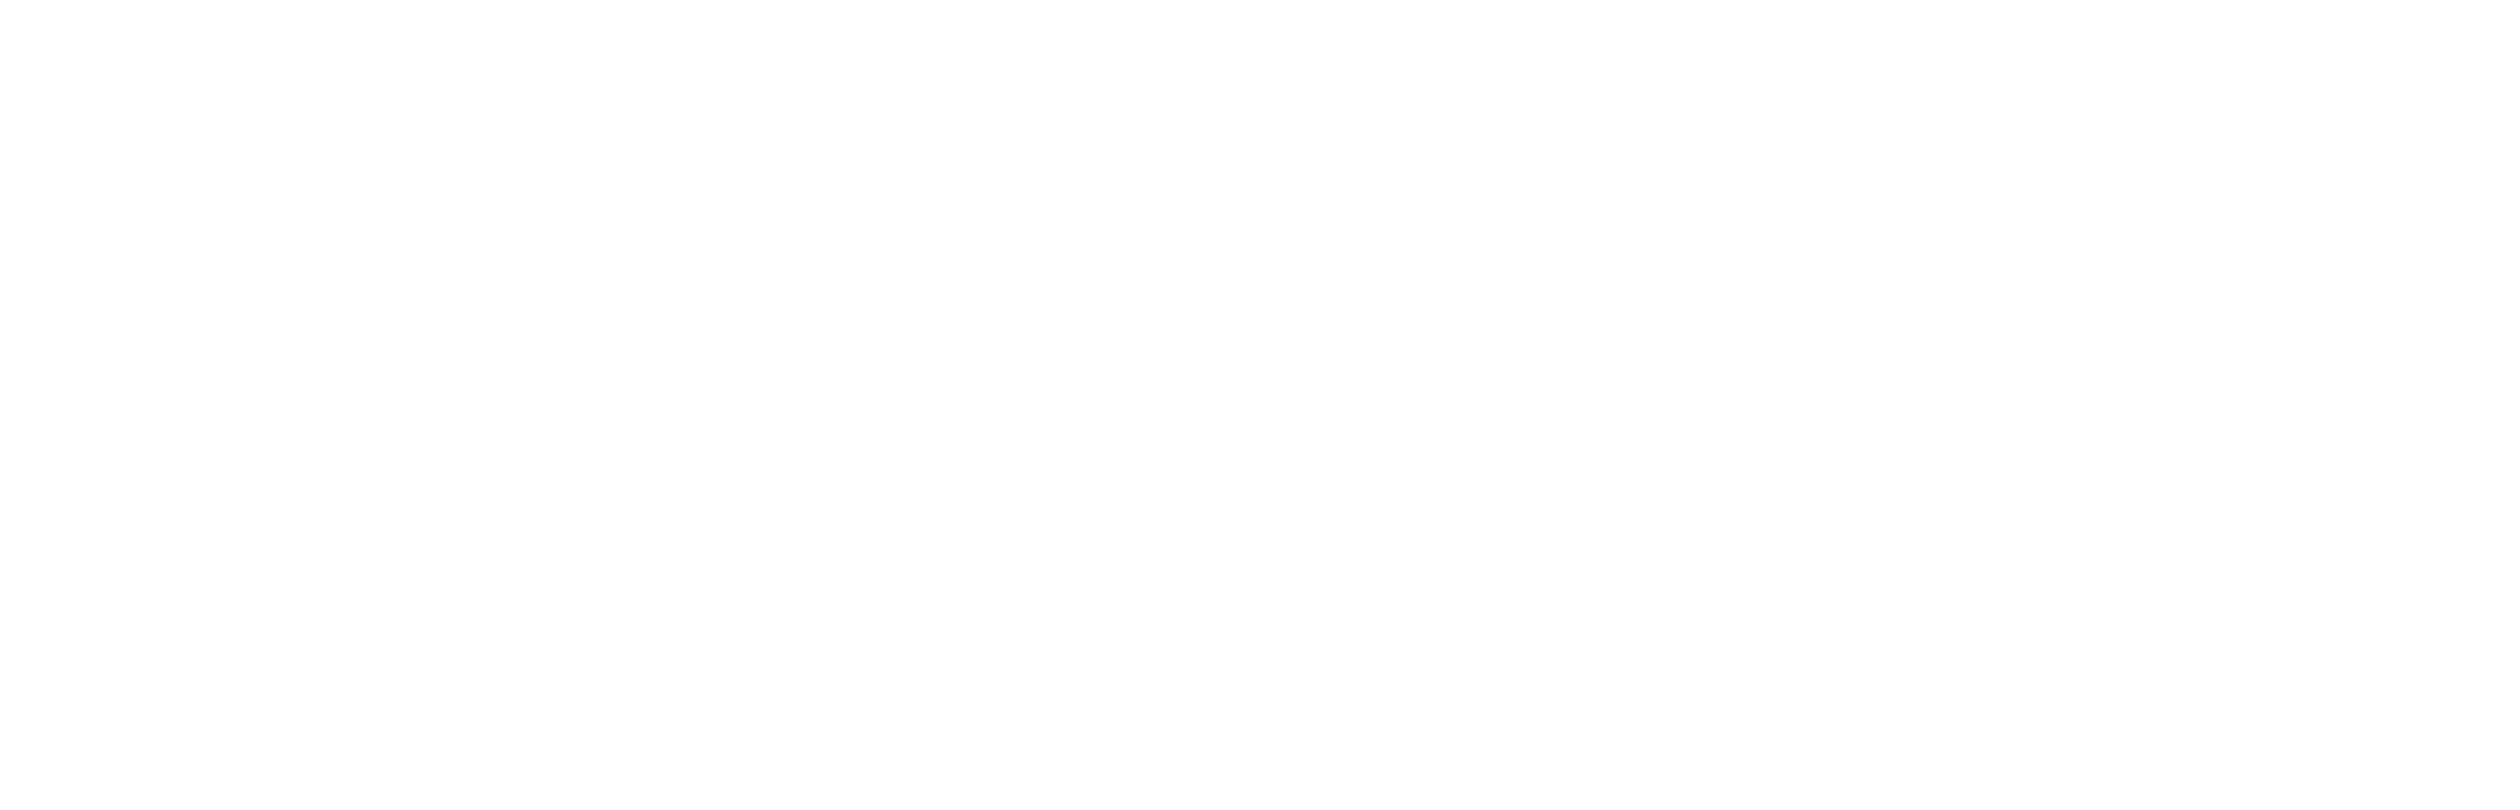 eaglenet-logo